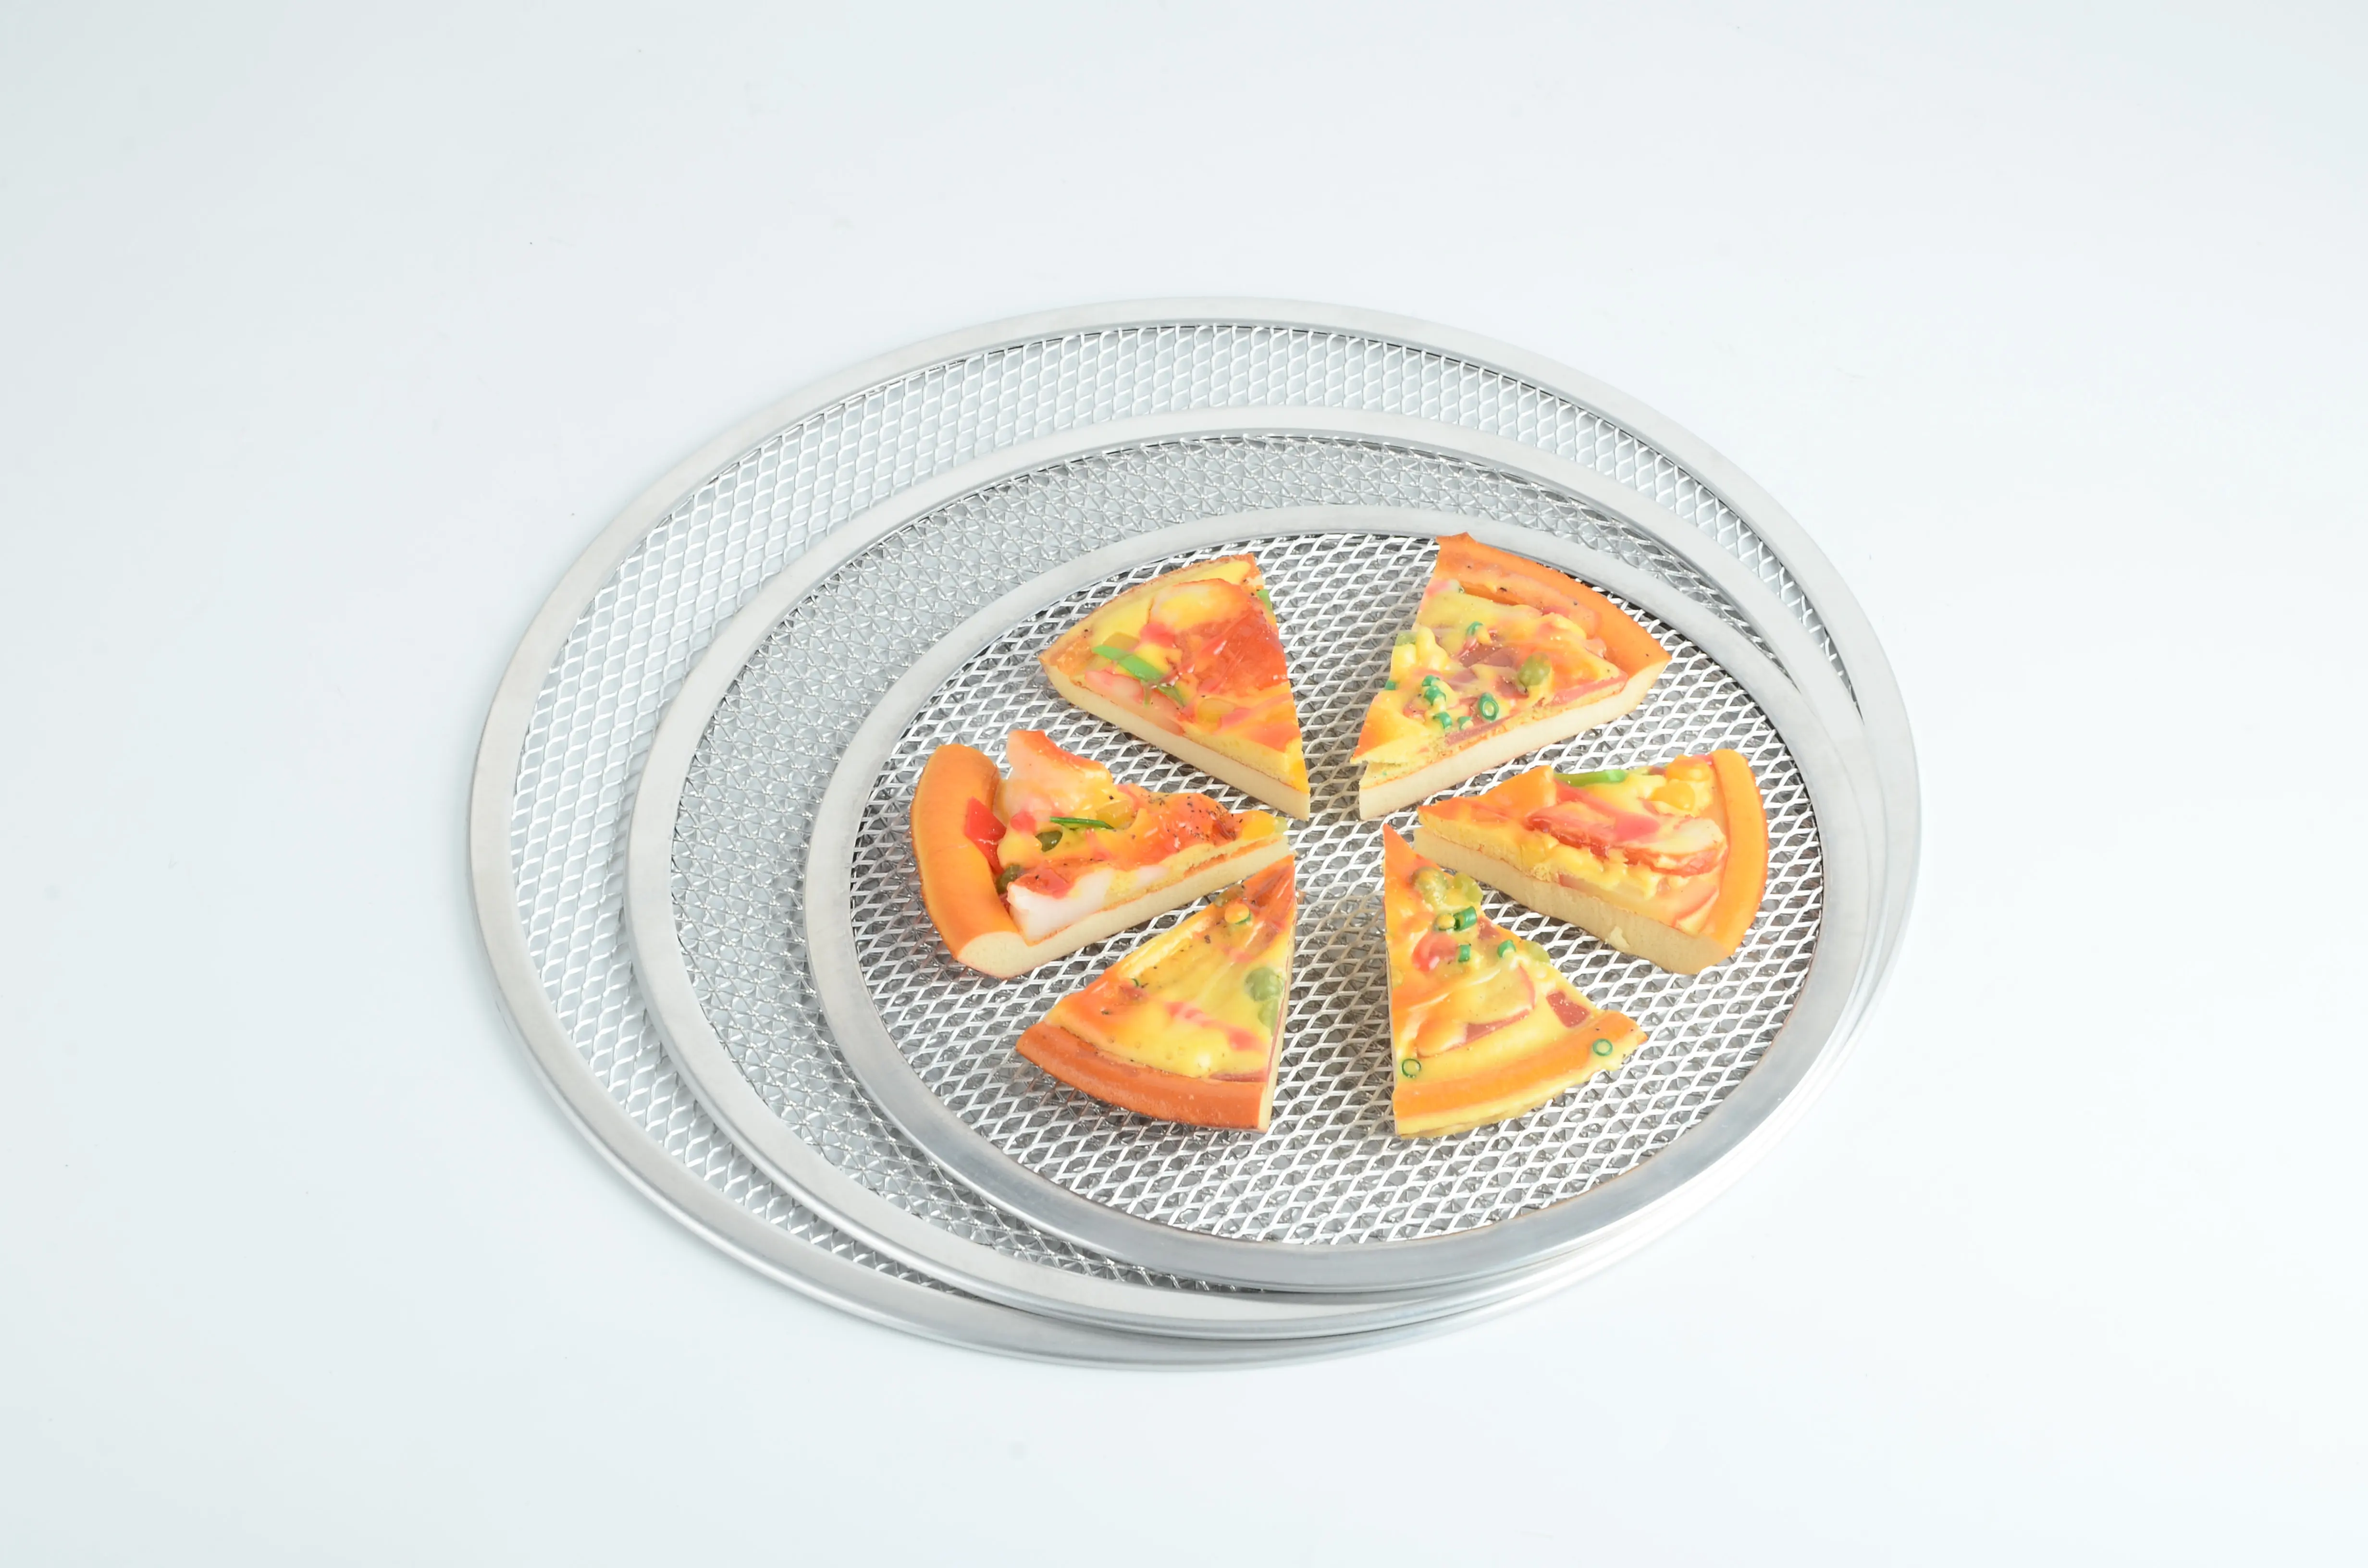 Сетка для пиццы. Setka dlya pitsa Stainless Steel pizza Mesh Plate 28sm. Тарелка для пиццы. Круглая форма для пиццы. Тарелка для пиццы стеклянная.